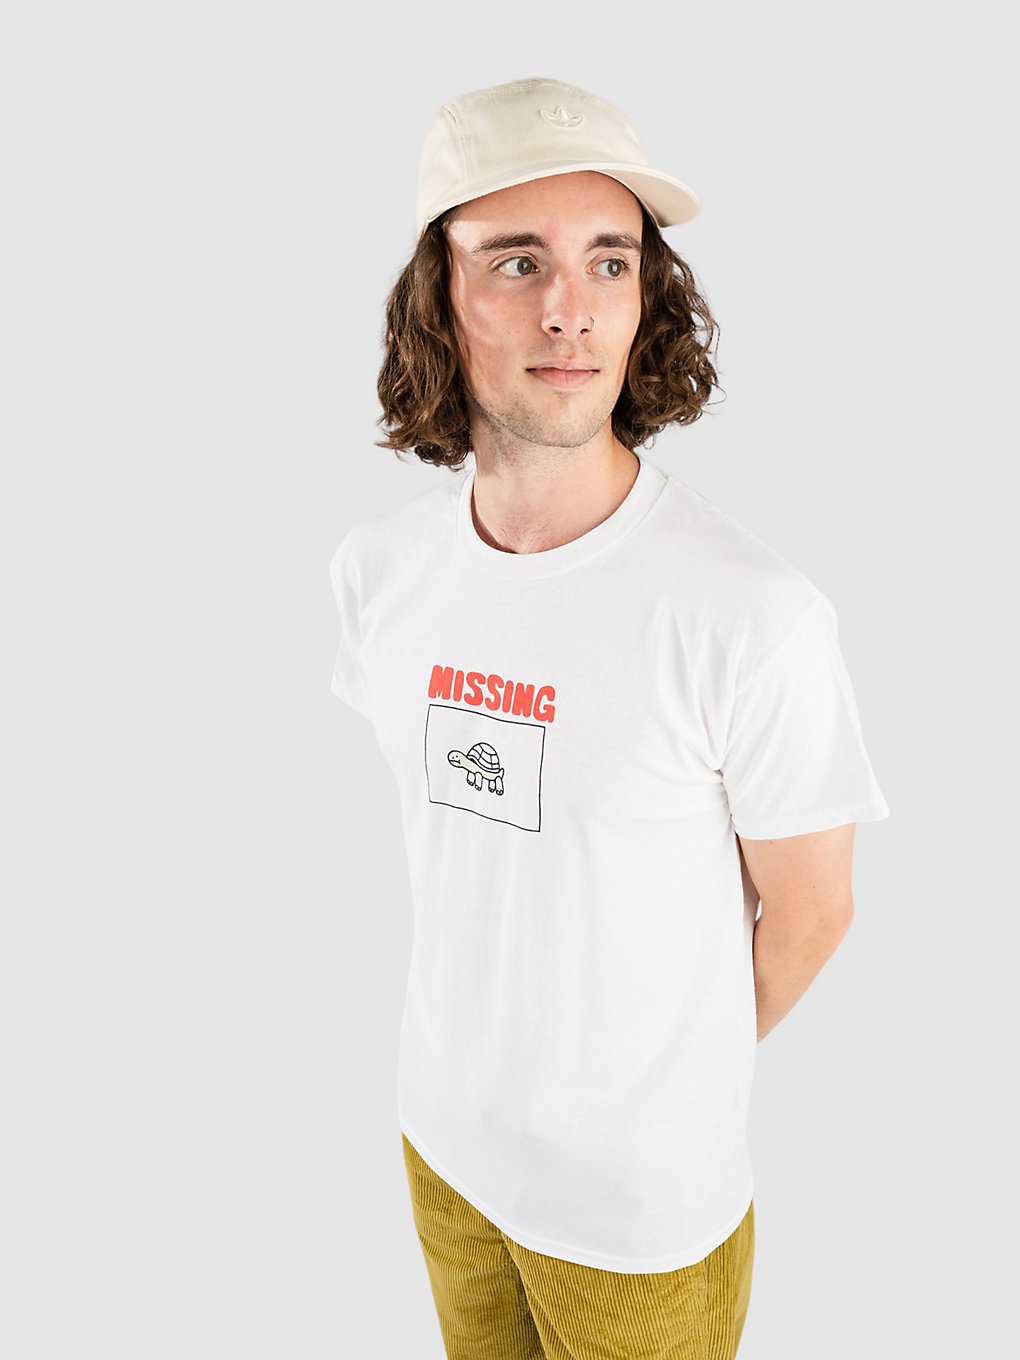 A.Lab Jerry T-Shirt white kaufen